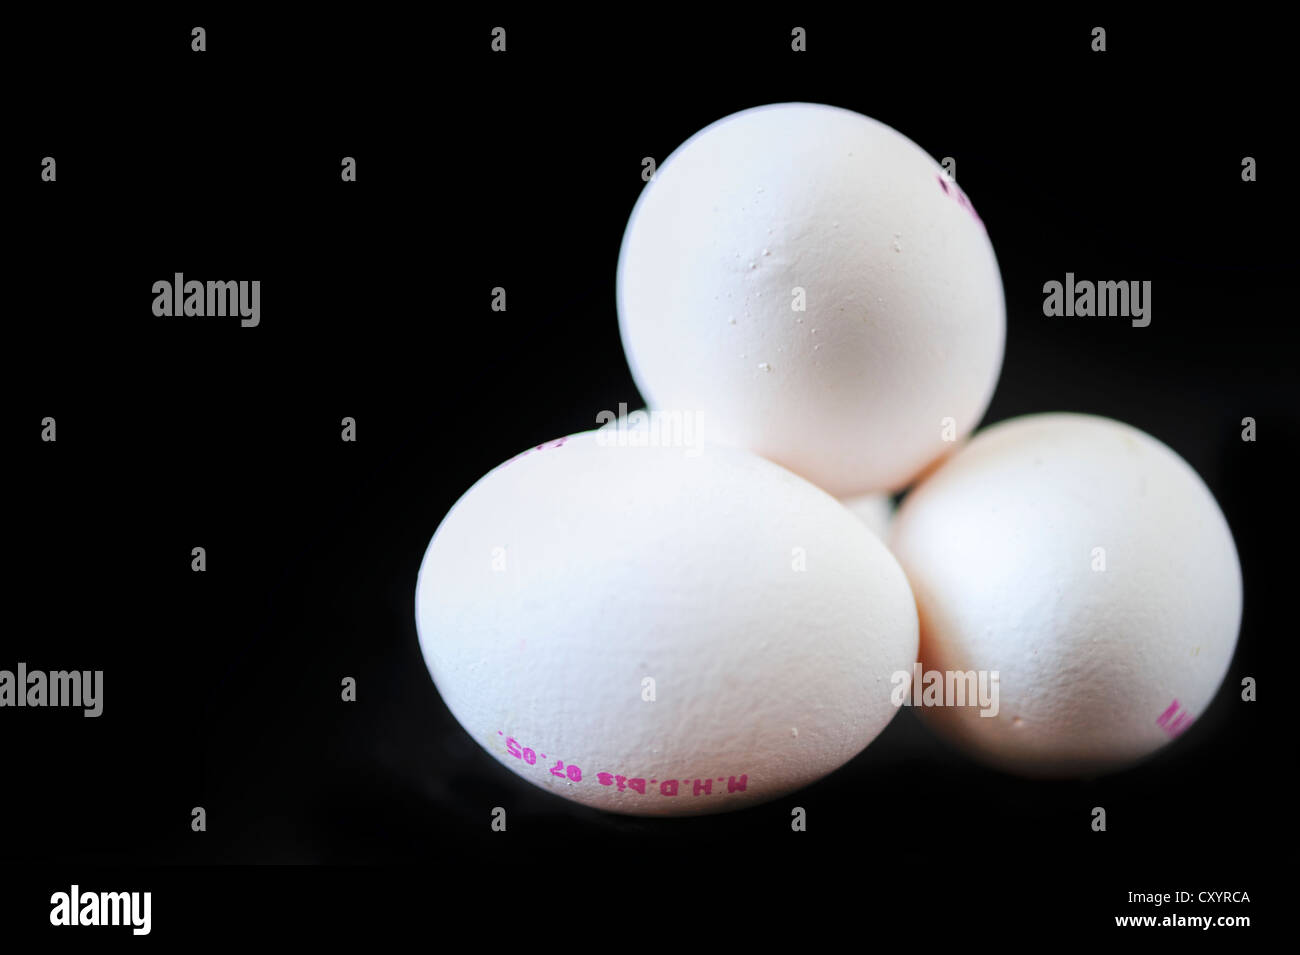 4 huevos de gallina blanca Foto de stock